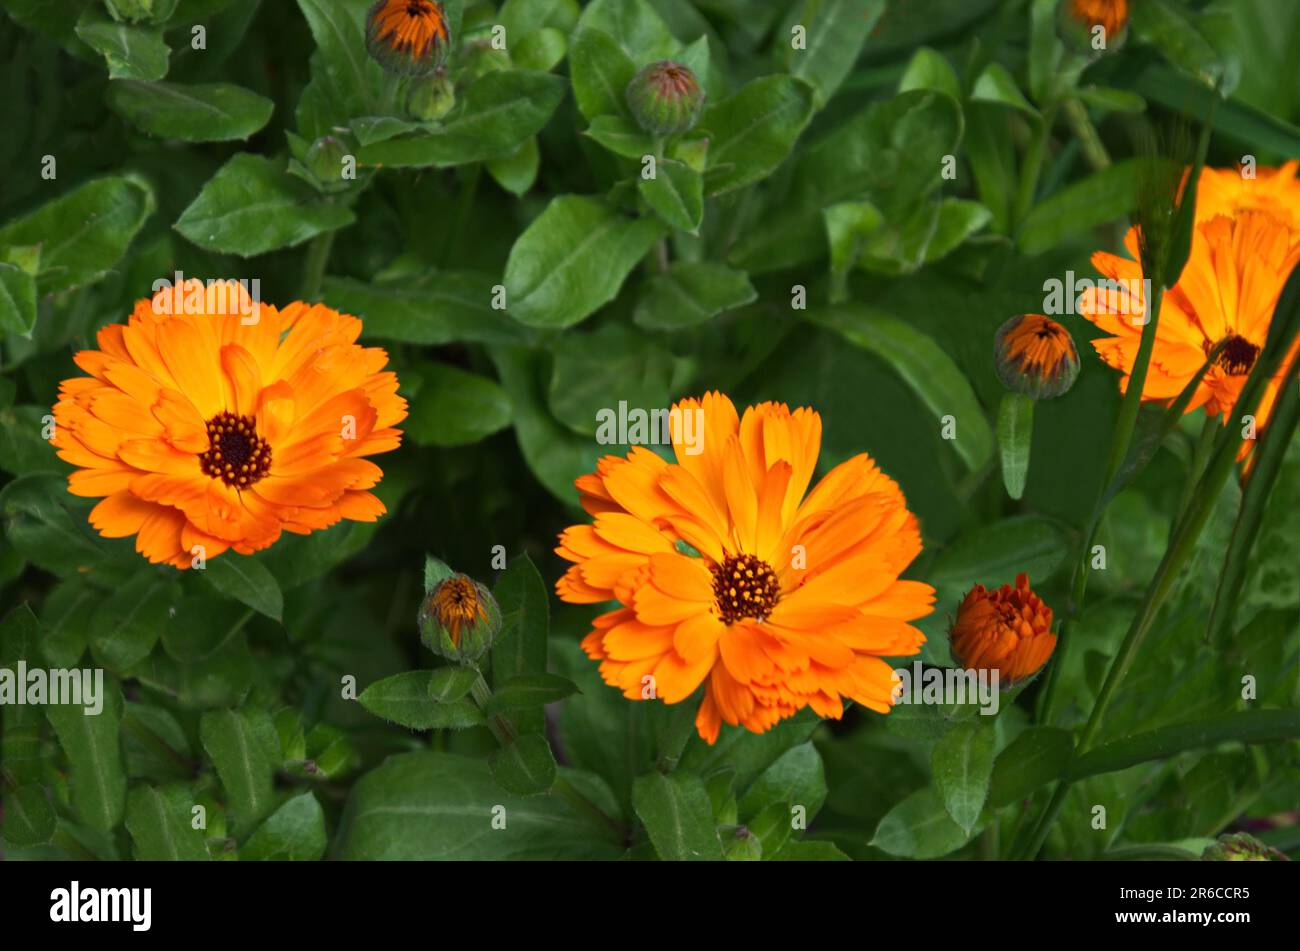 Beautiful orange marigold flower in the garden, Sofia, Bulgaria Stock Photo